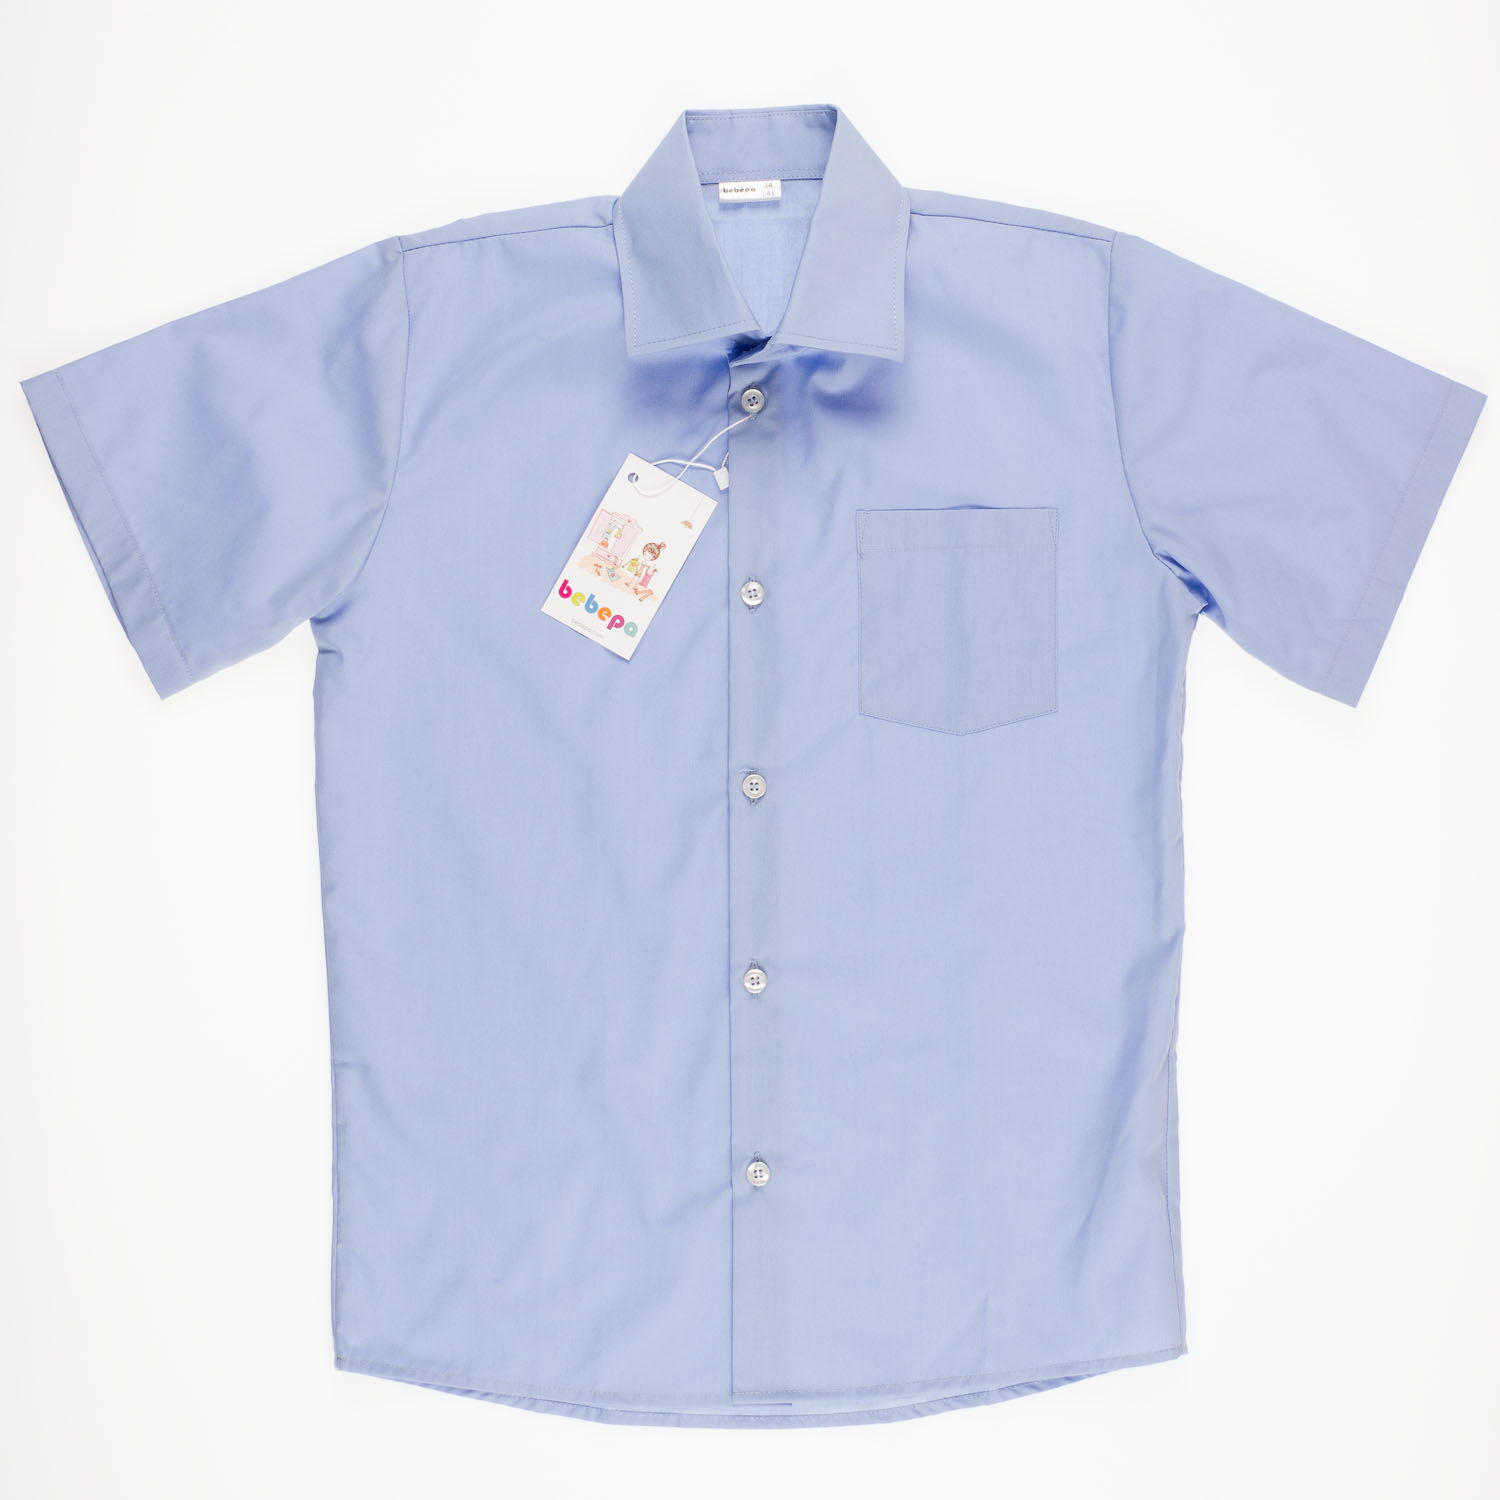 Рубашка с коротким рукавом для мальчика Bebepa синяя 1105-017 - картинка